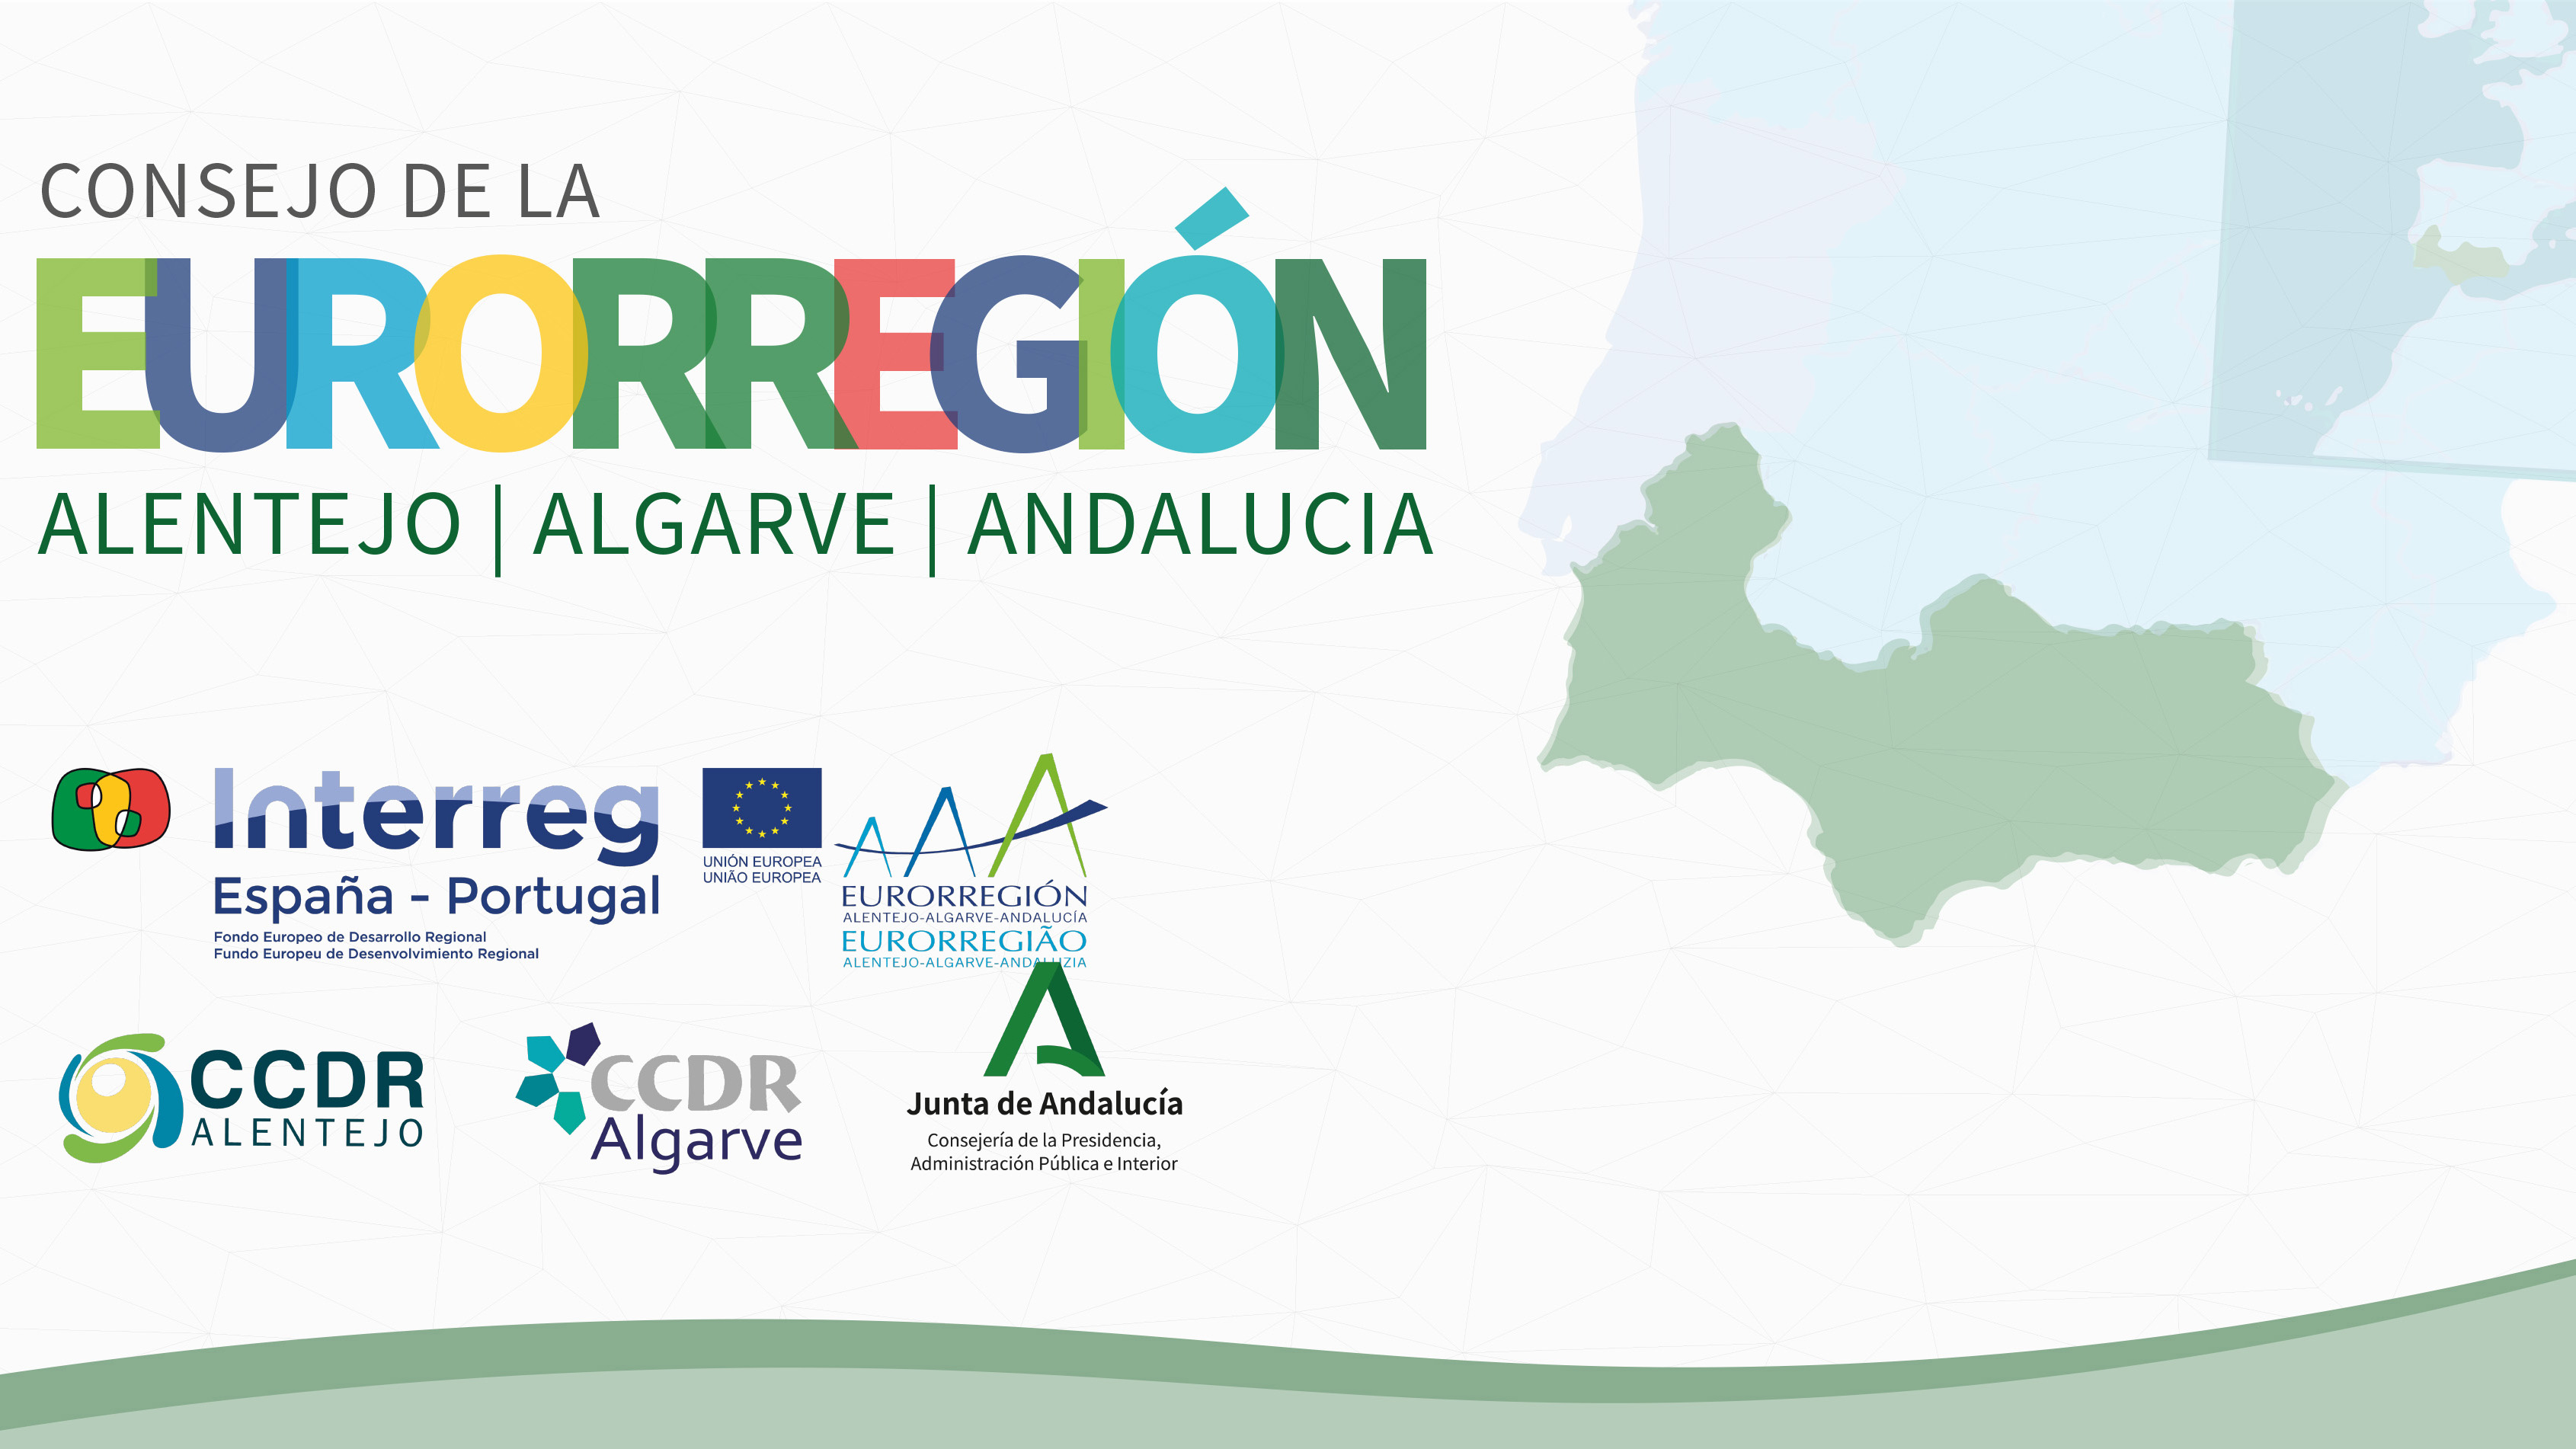 Las regiones afectadas por la Estrategia Territorial son Andalucía y el Algarve el Alentejo portugueses.